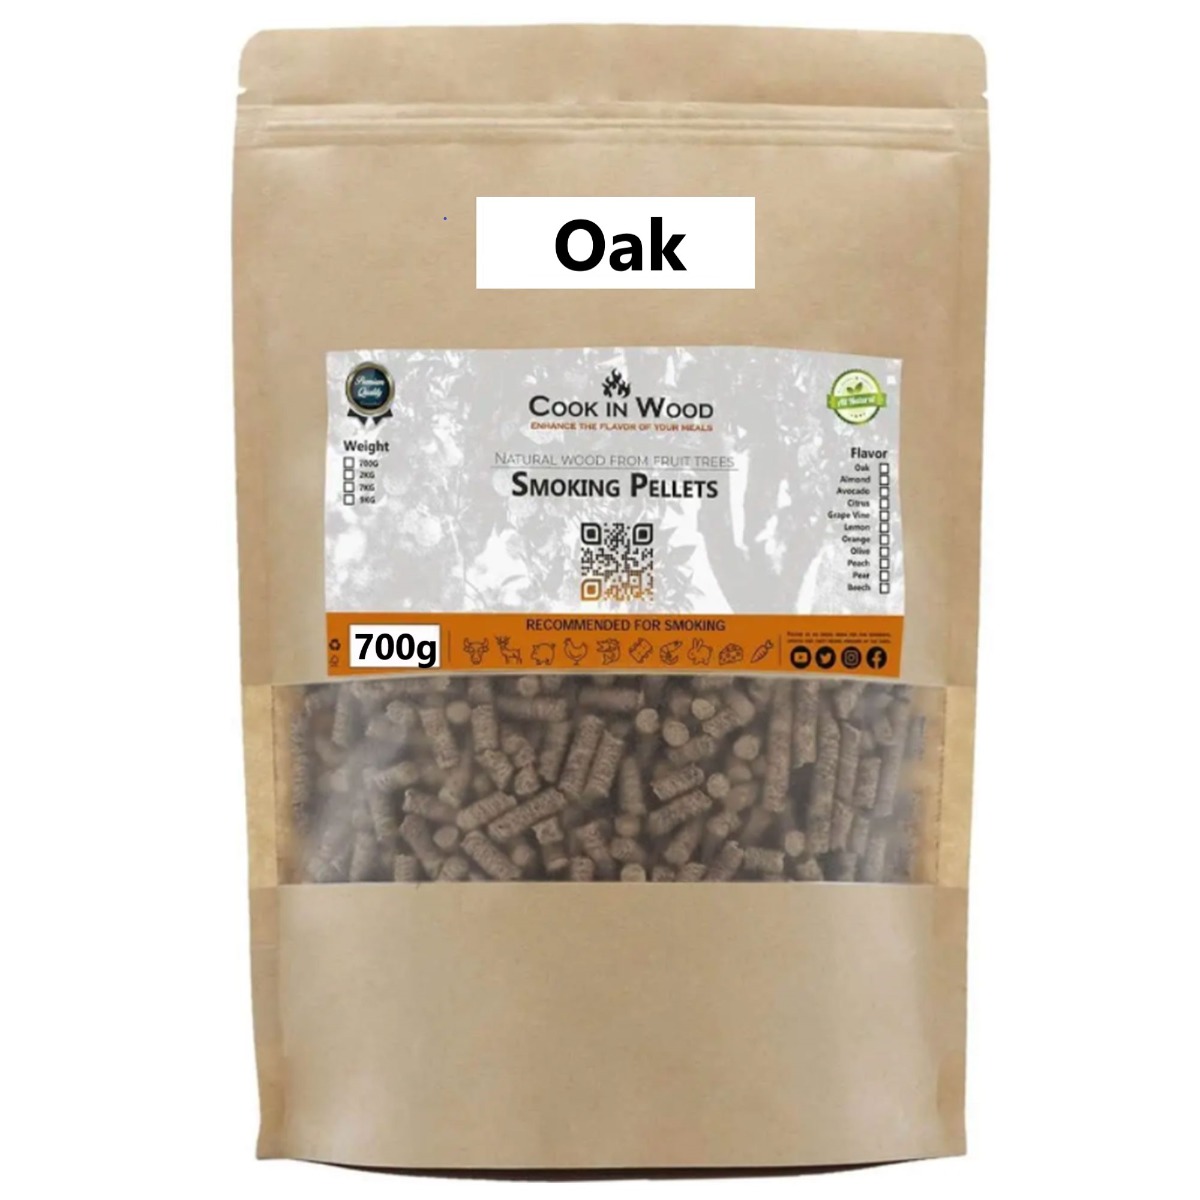 Oak Smoking Pellets, 700g - Cook In Wood®